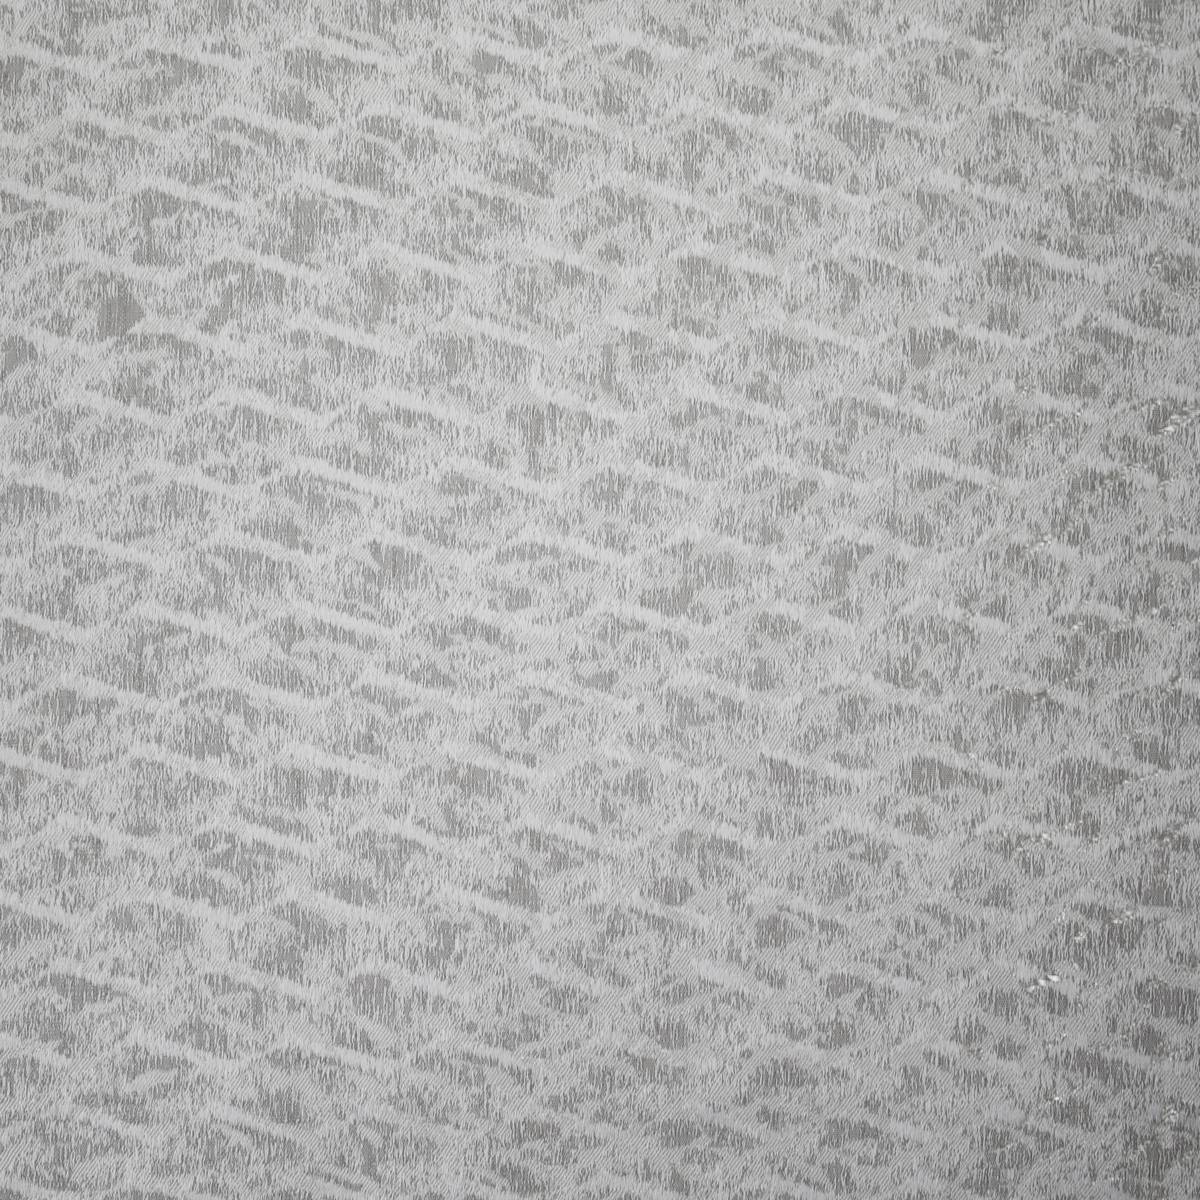 Willot Fog Fabric by Ashley Wilde